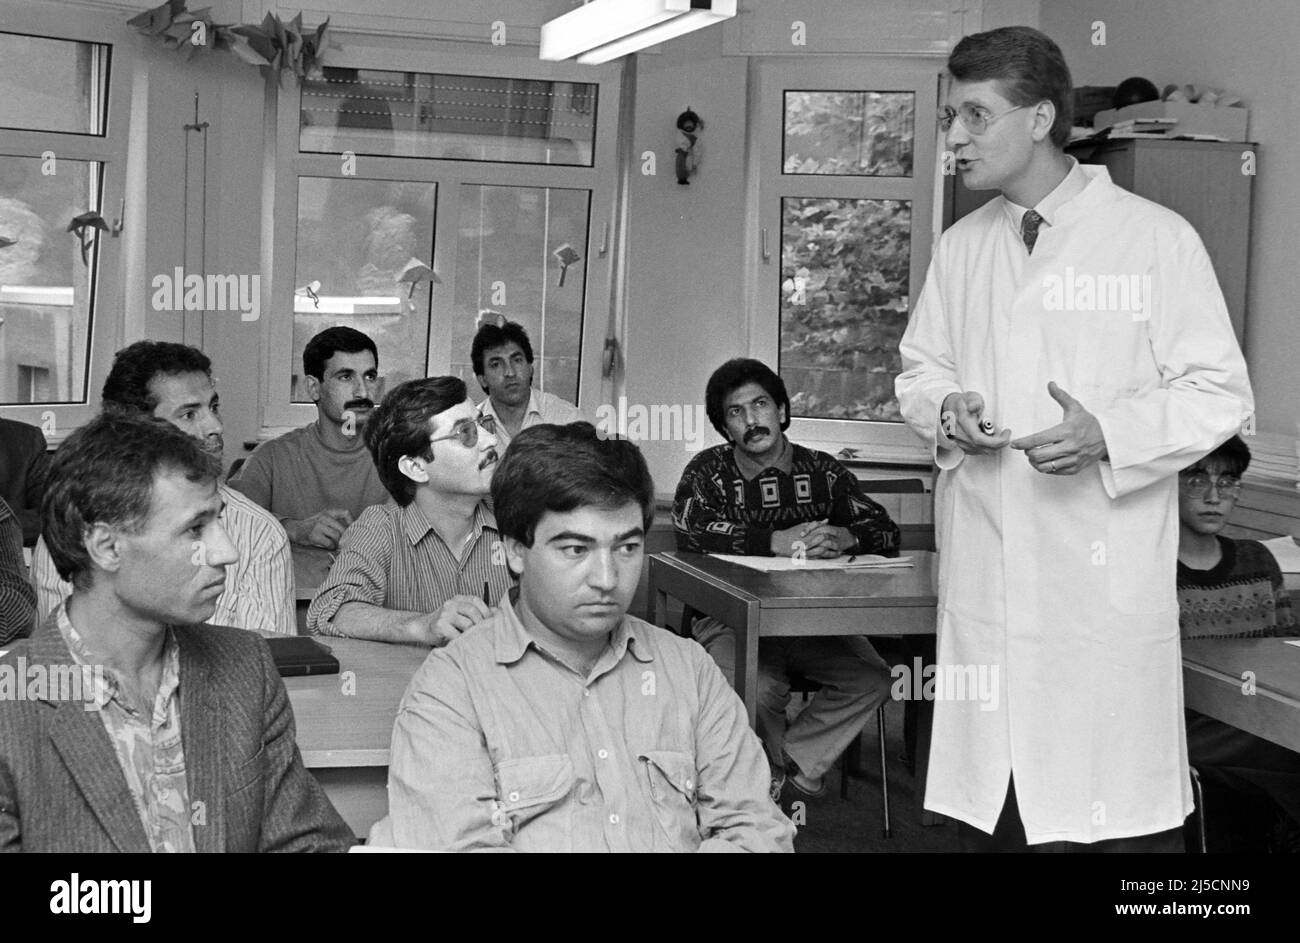 Bochum, DEU, 08/20/1991 - i medici afghani che sono venuti in Germania come rifugiati e hanno chiesto asilo ricevono una formazione avanzata in chirurgia presso un ospedale di Bochum. [traduzione automatizzata] Foto Stock